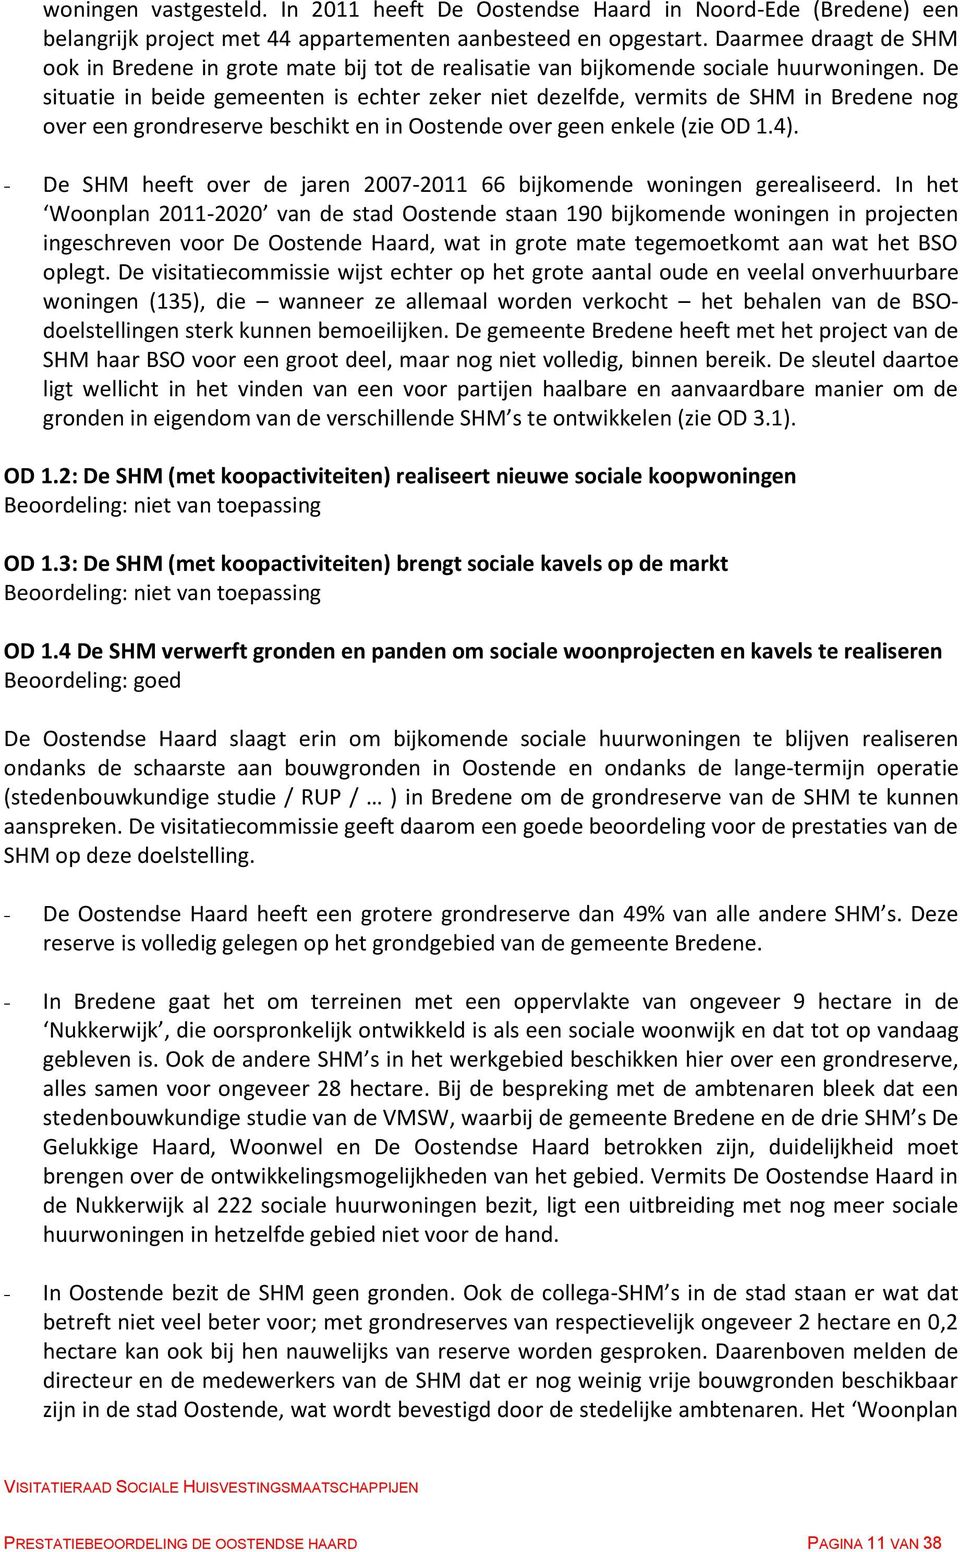 De situatie in beide gemeenten is echter zeker niet dezelfde, vermits de SHM in Bredene nog over een grondreserve beschikt en in Oostende over geen enkele (zie OD 1.4).